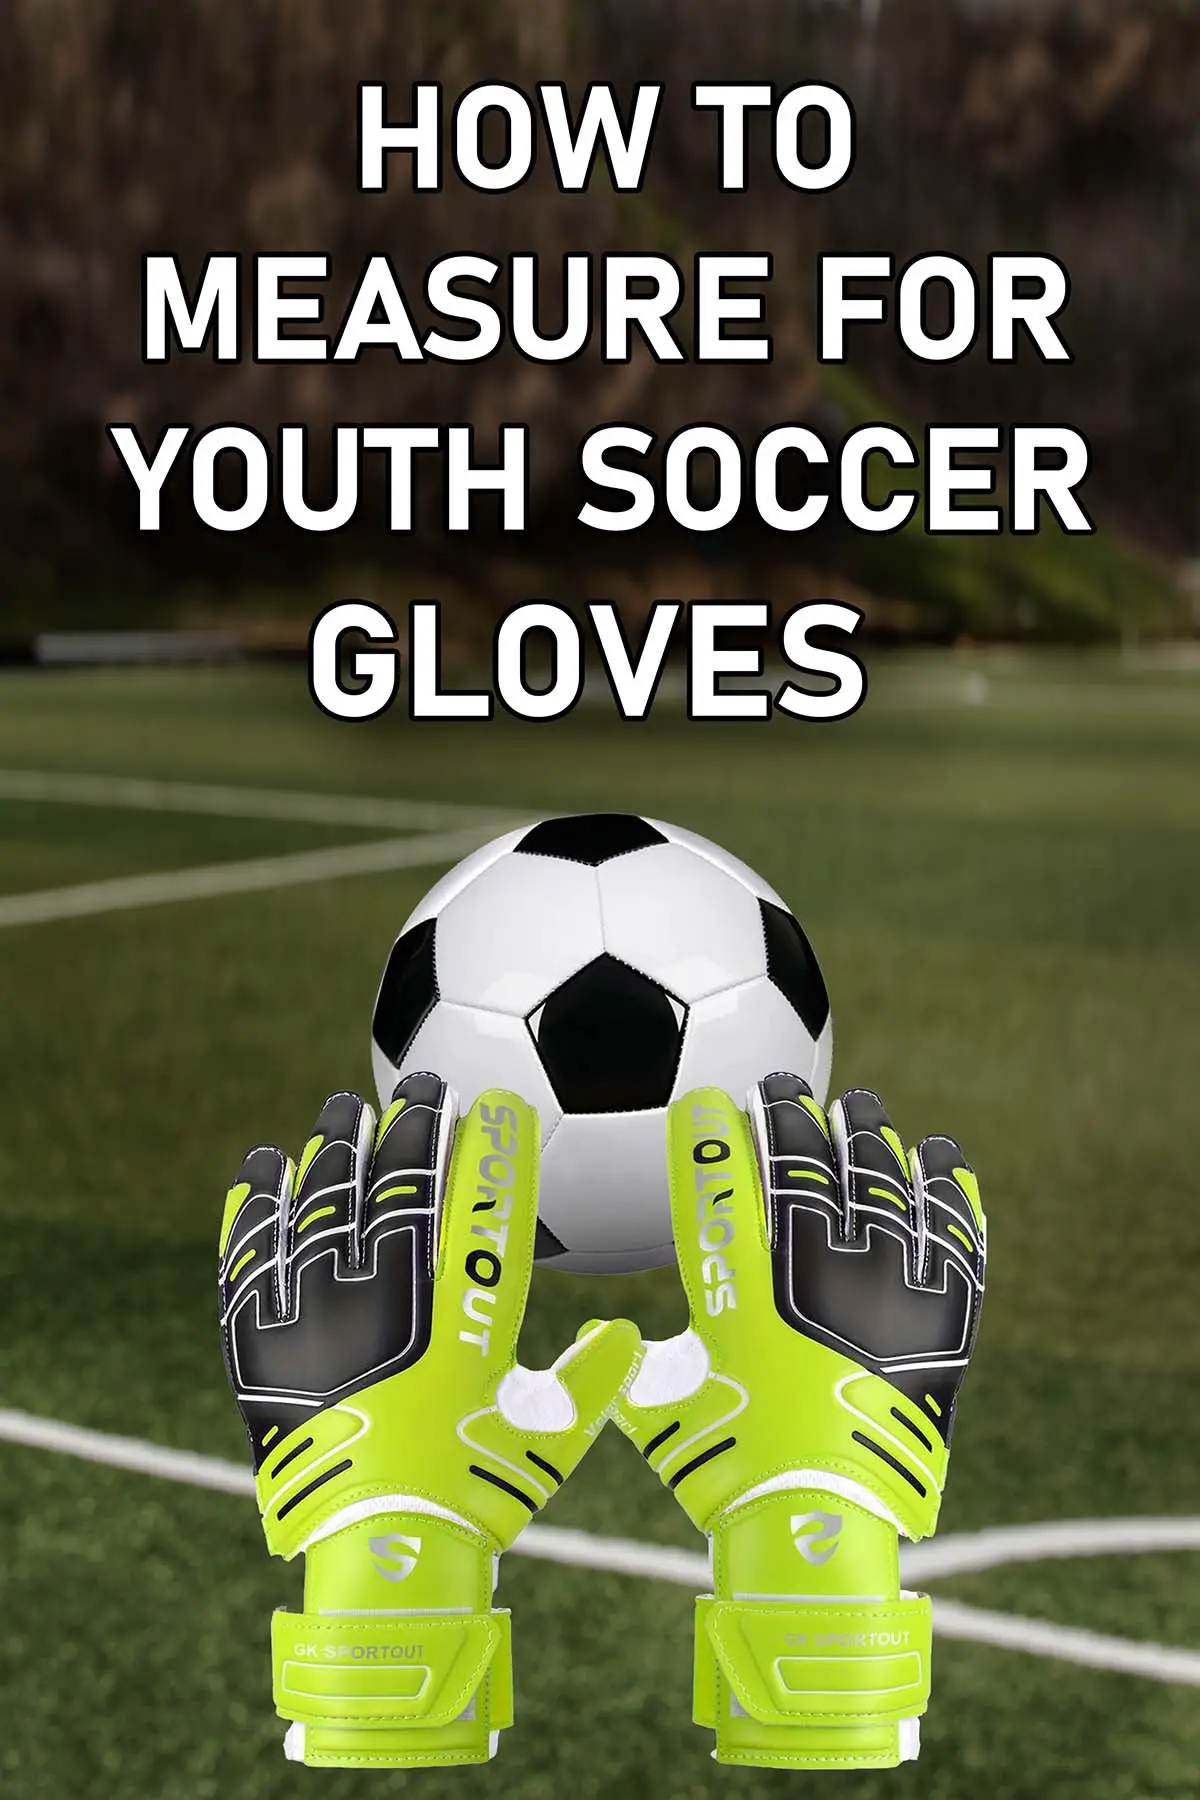 Youth soccer goalie gloves